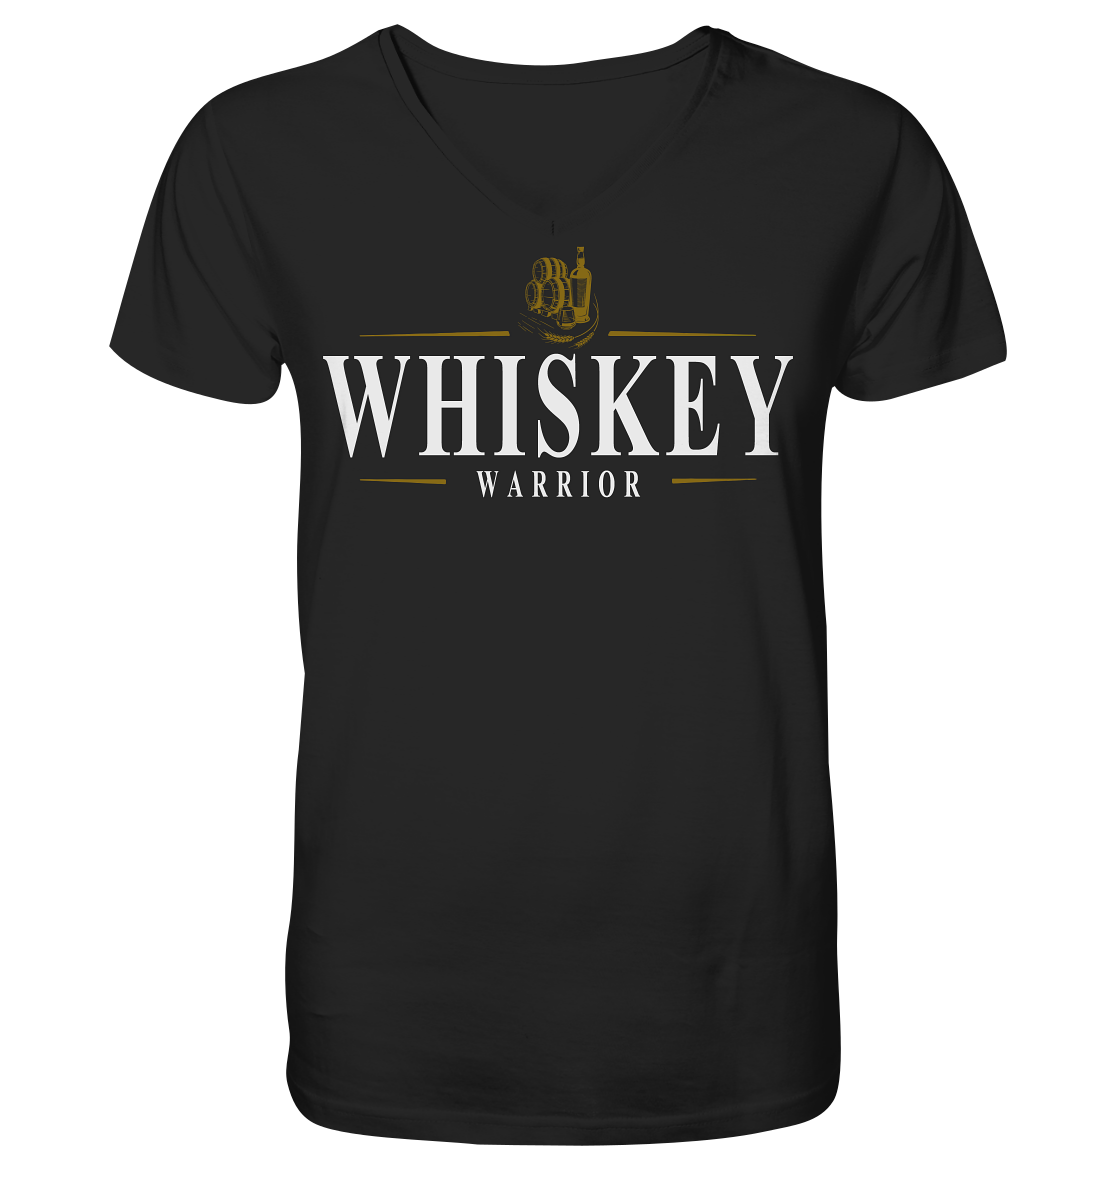 Whiskey "Warrior" - V-Neck Shirt